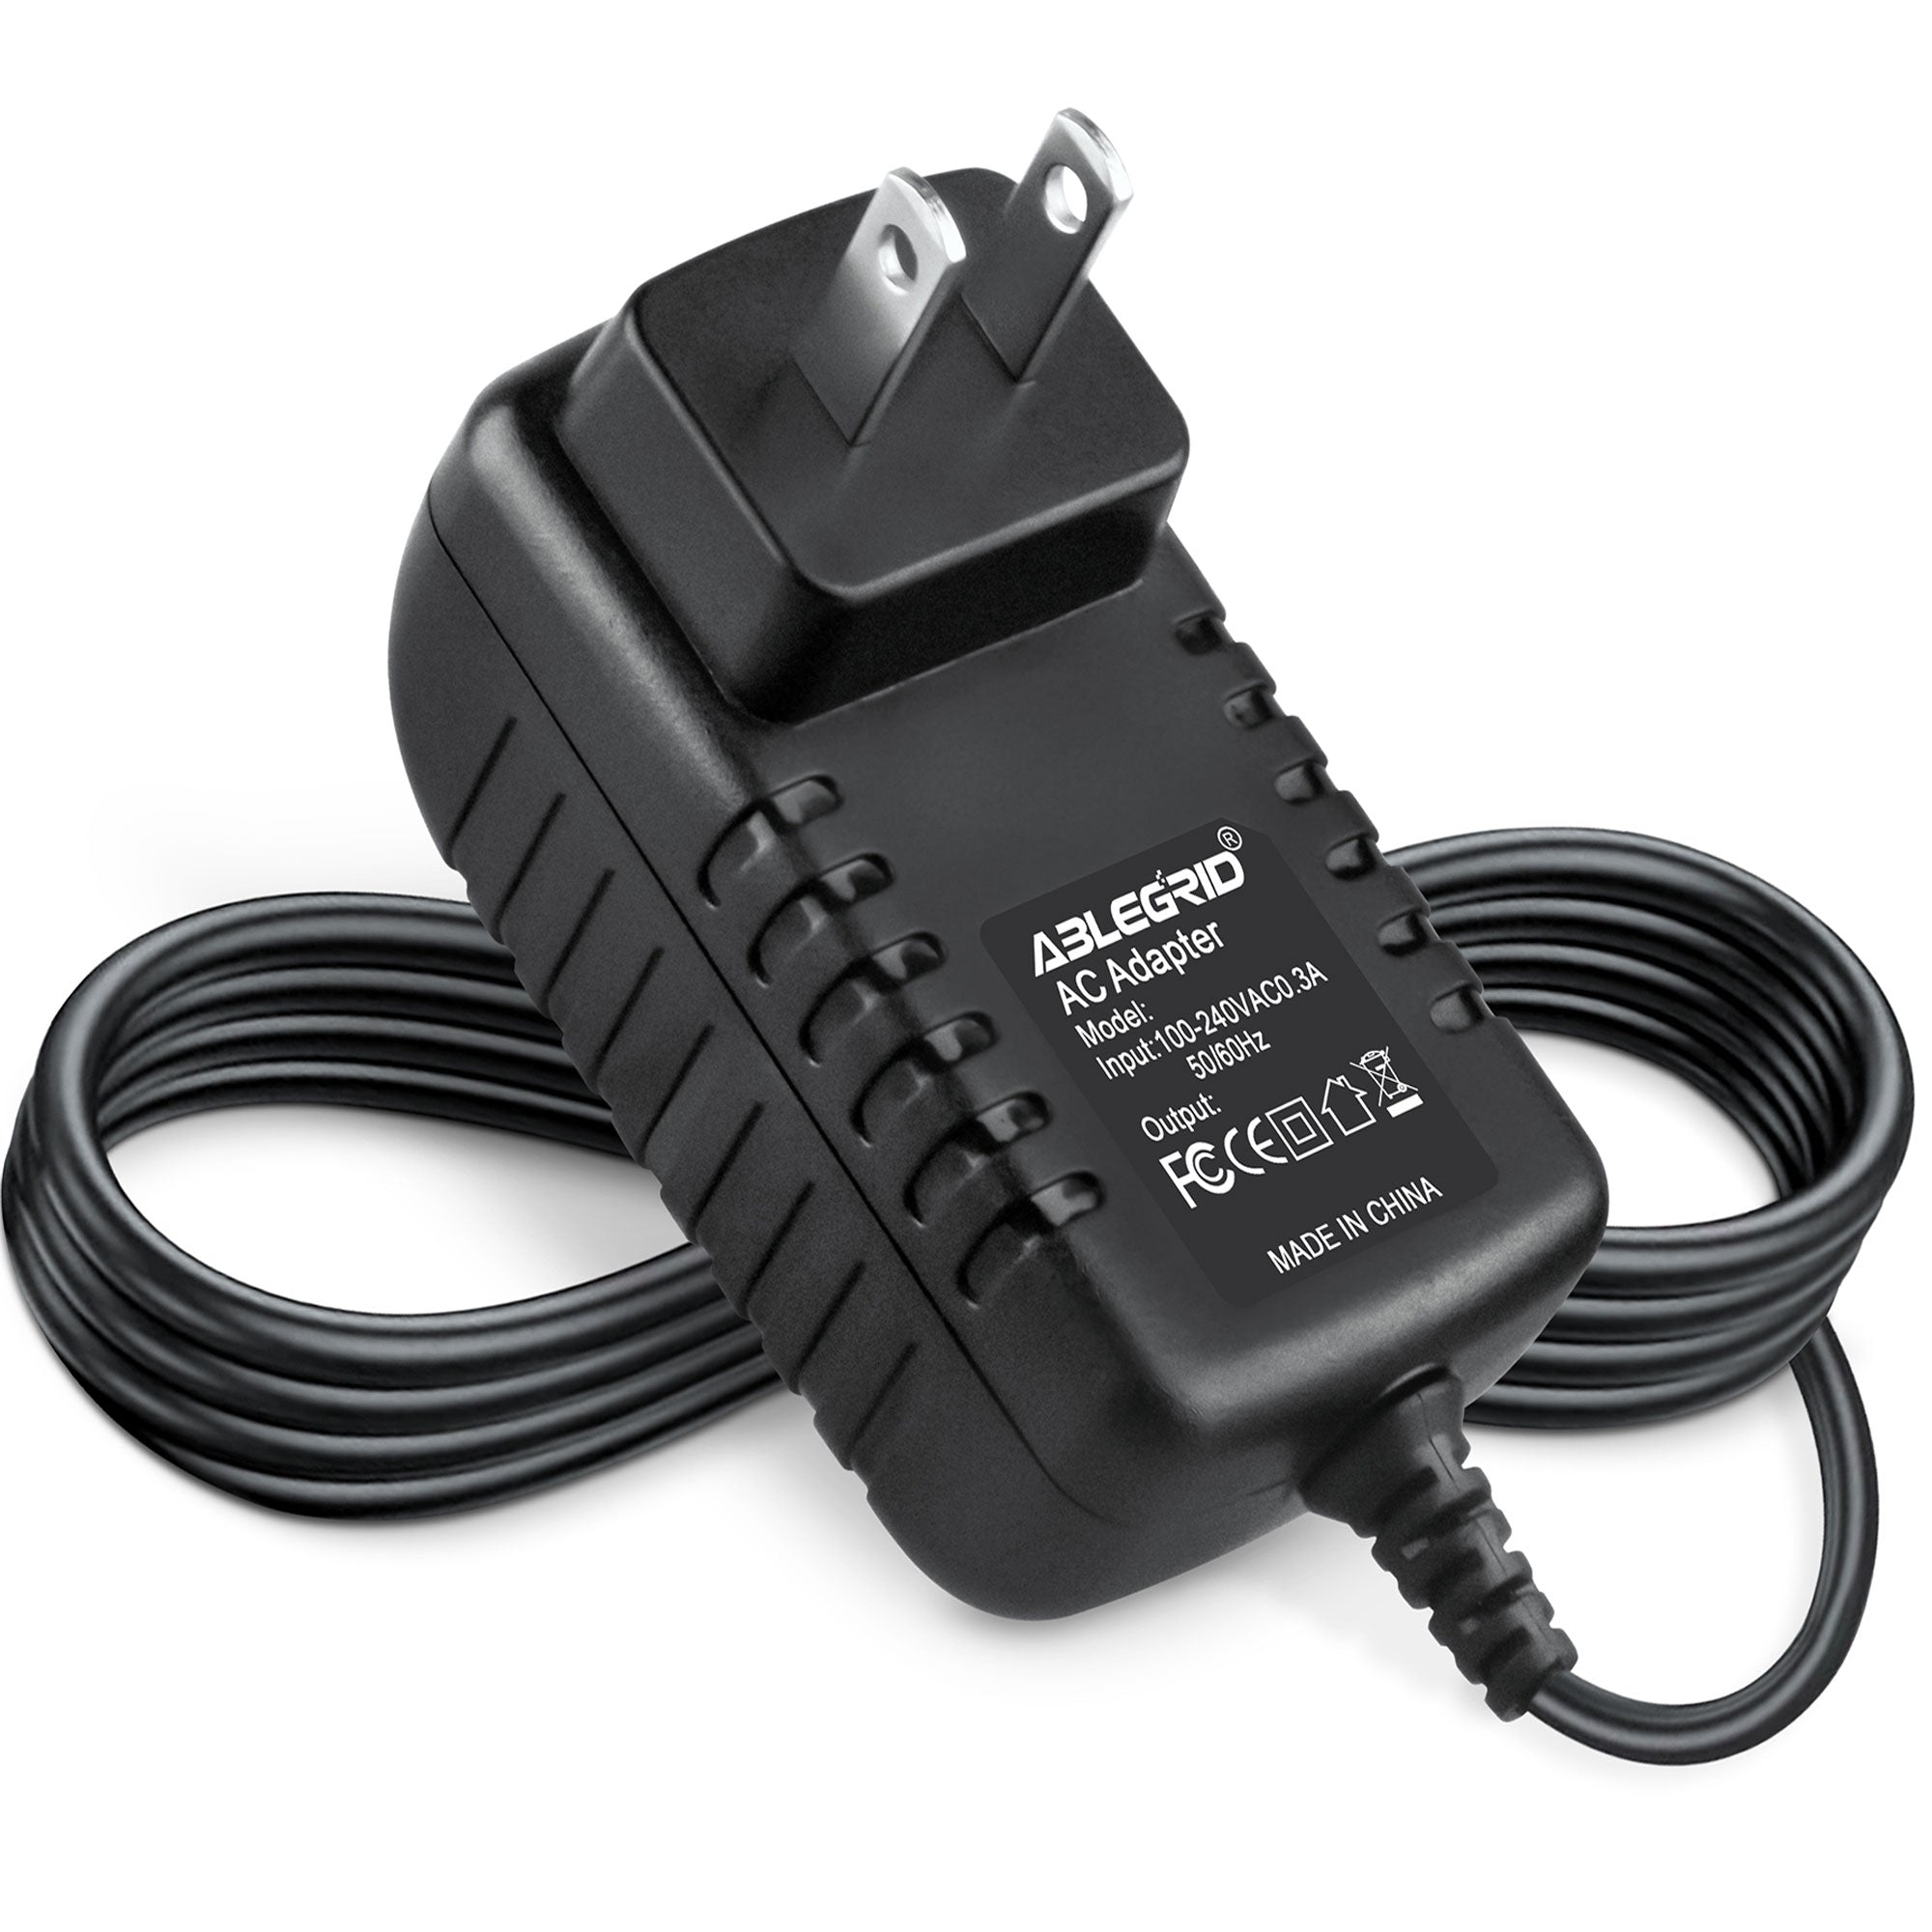 AbleGrid AC Adapter for Sony ICF-C11iP ICF-C11iP/BLK AM/FM Alarm Clock Radio Power Supply